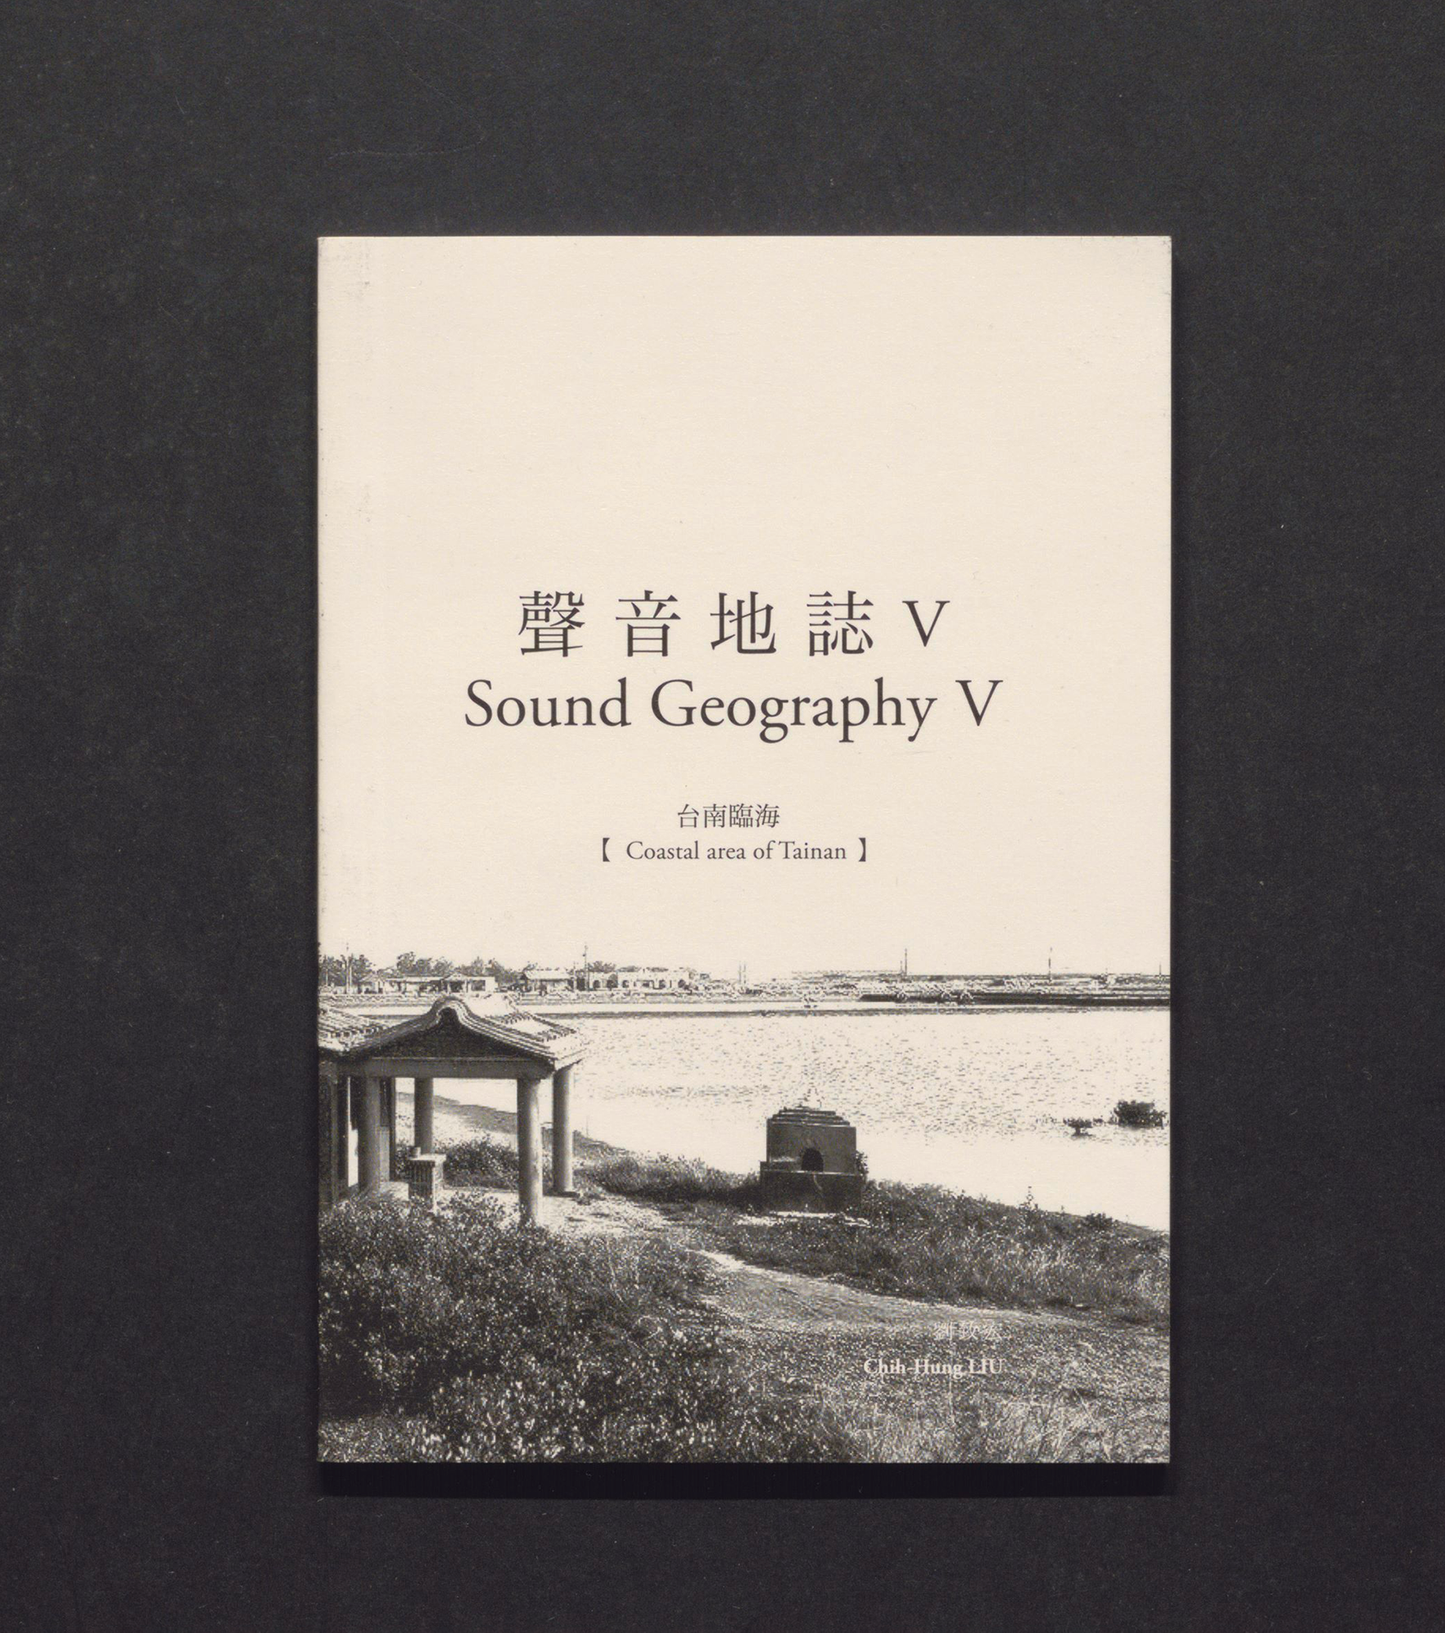 Sound Geography V - Coastal area of Tainan